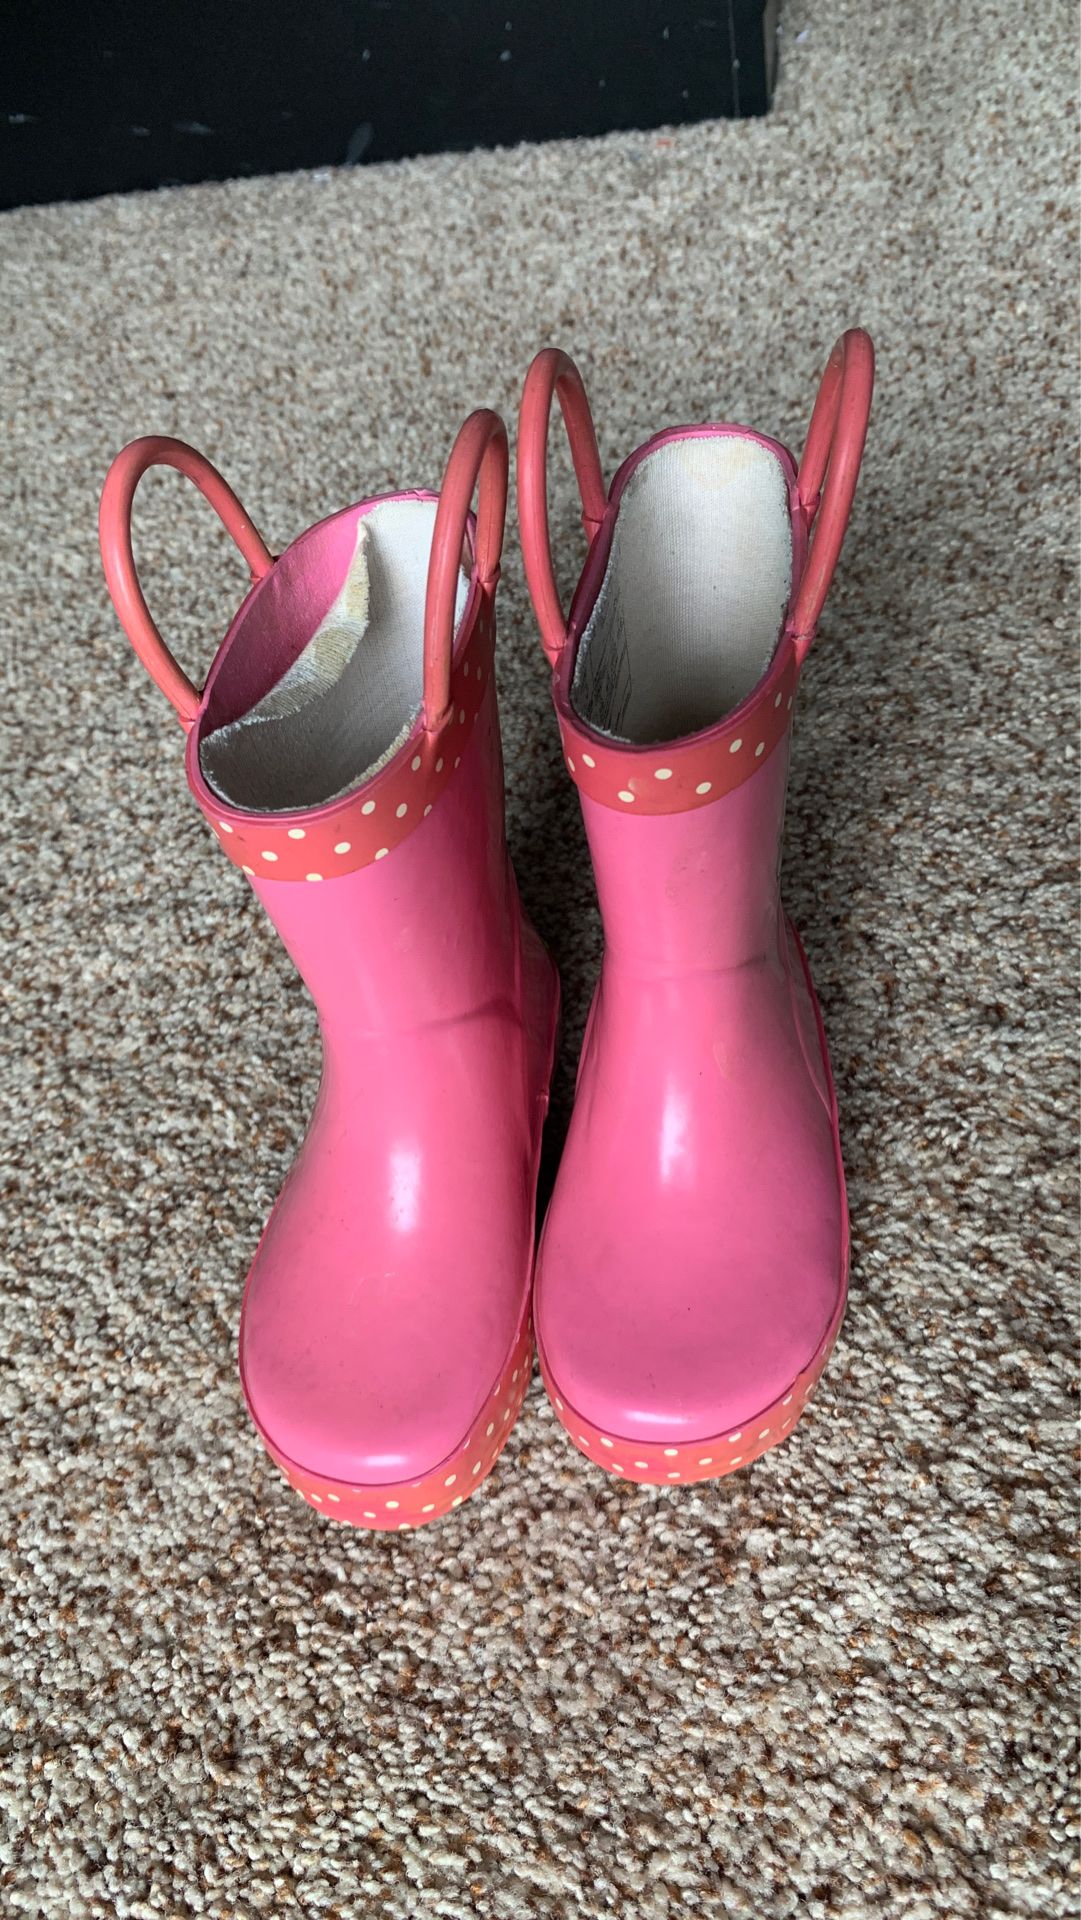 Size 5 rain boots